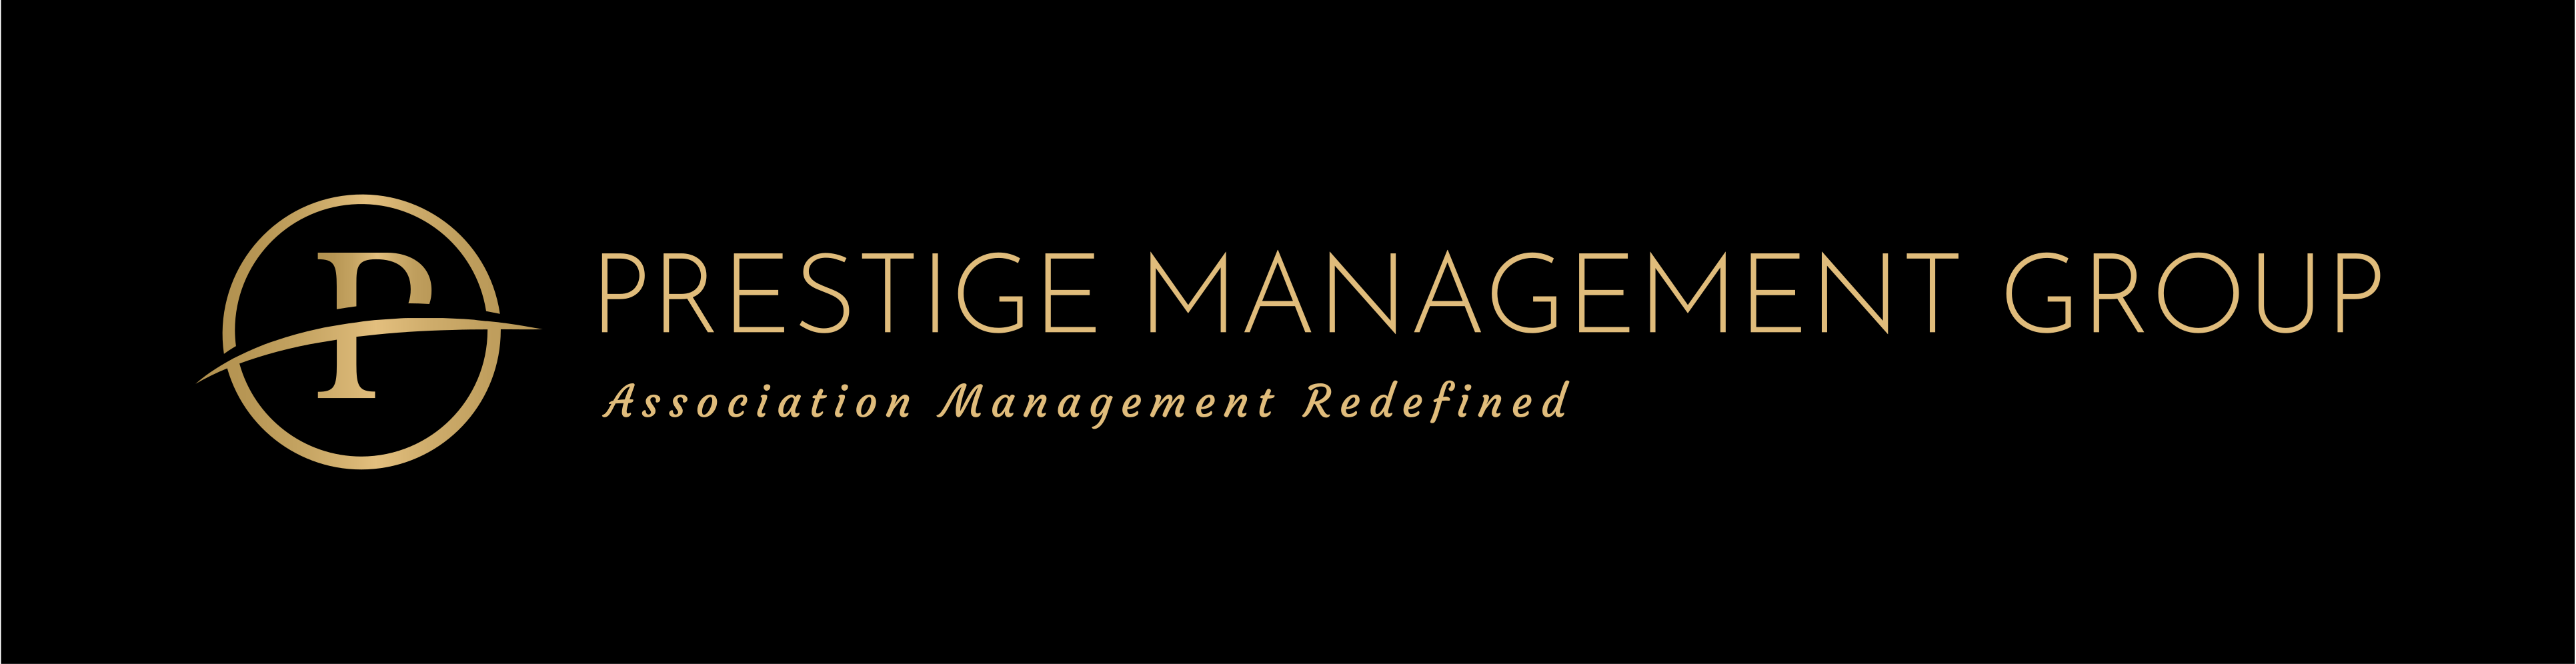 Prestige Management Group Business Footer Logo